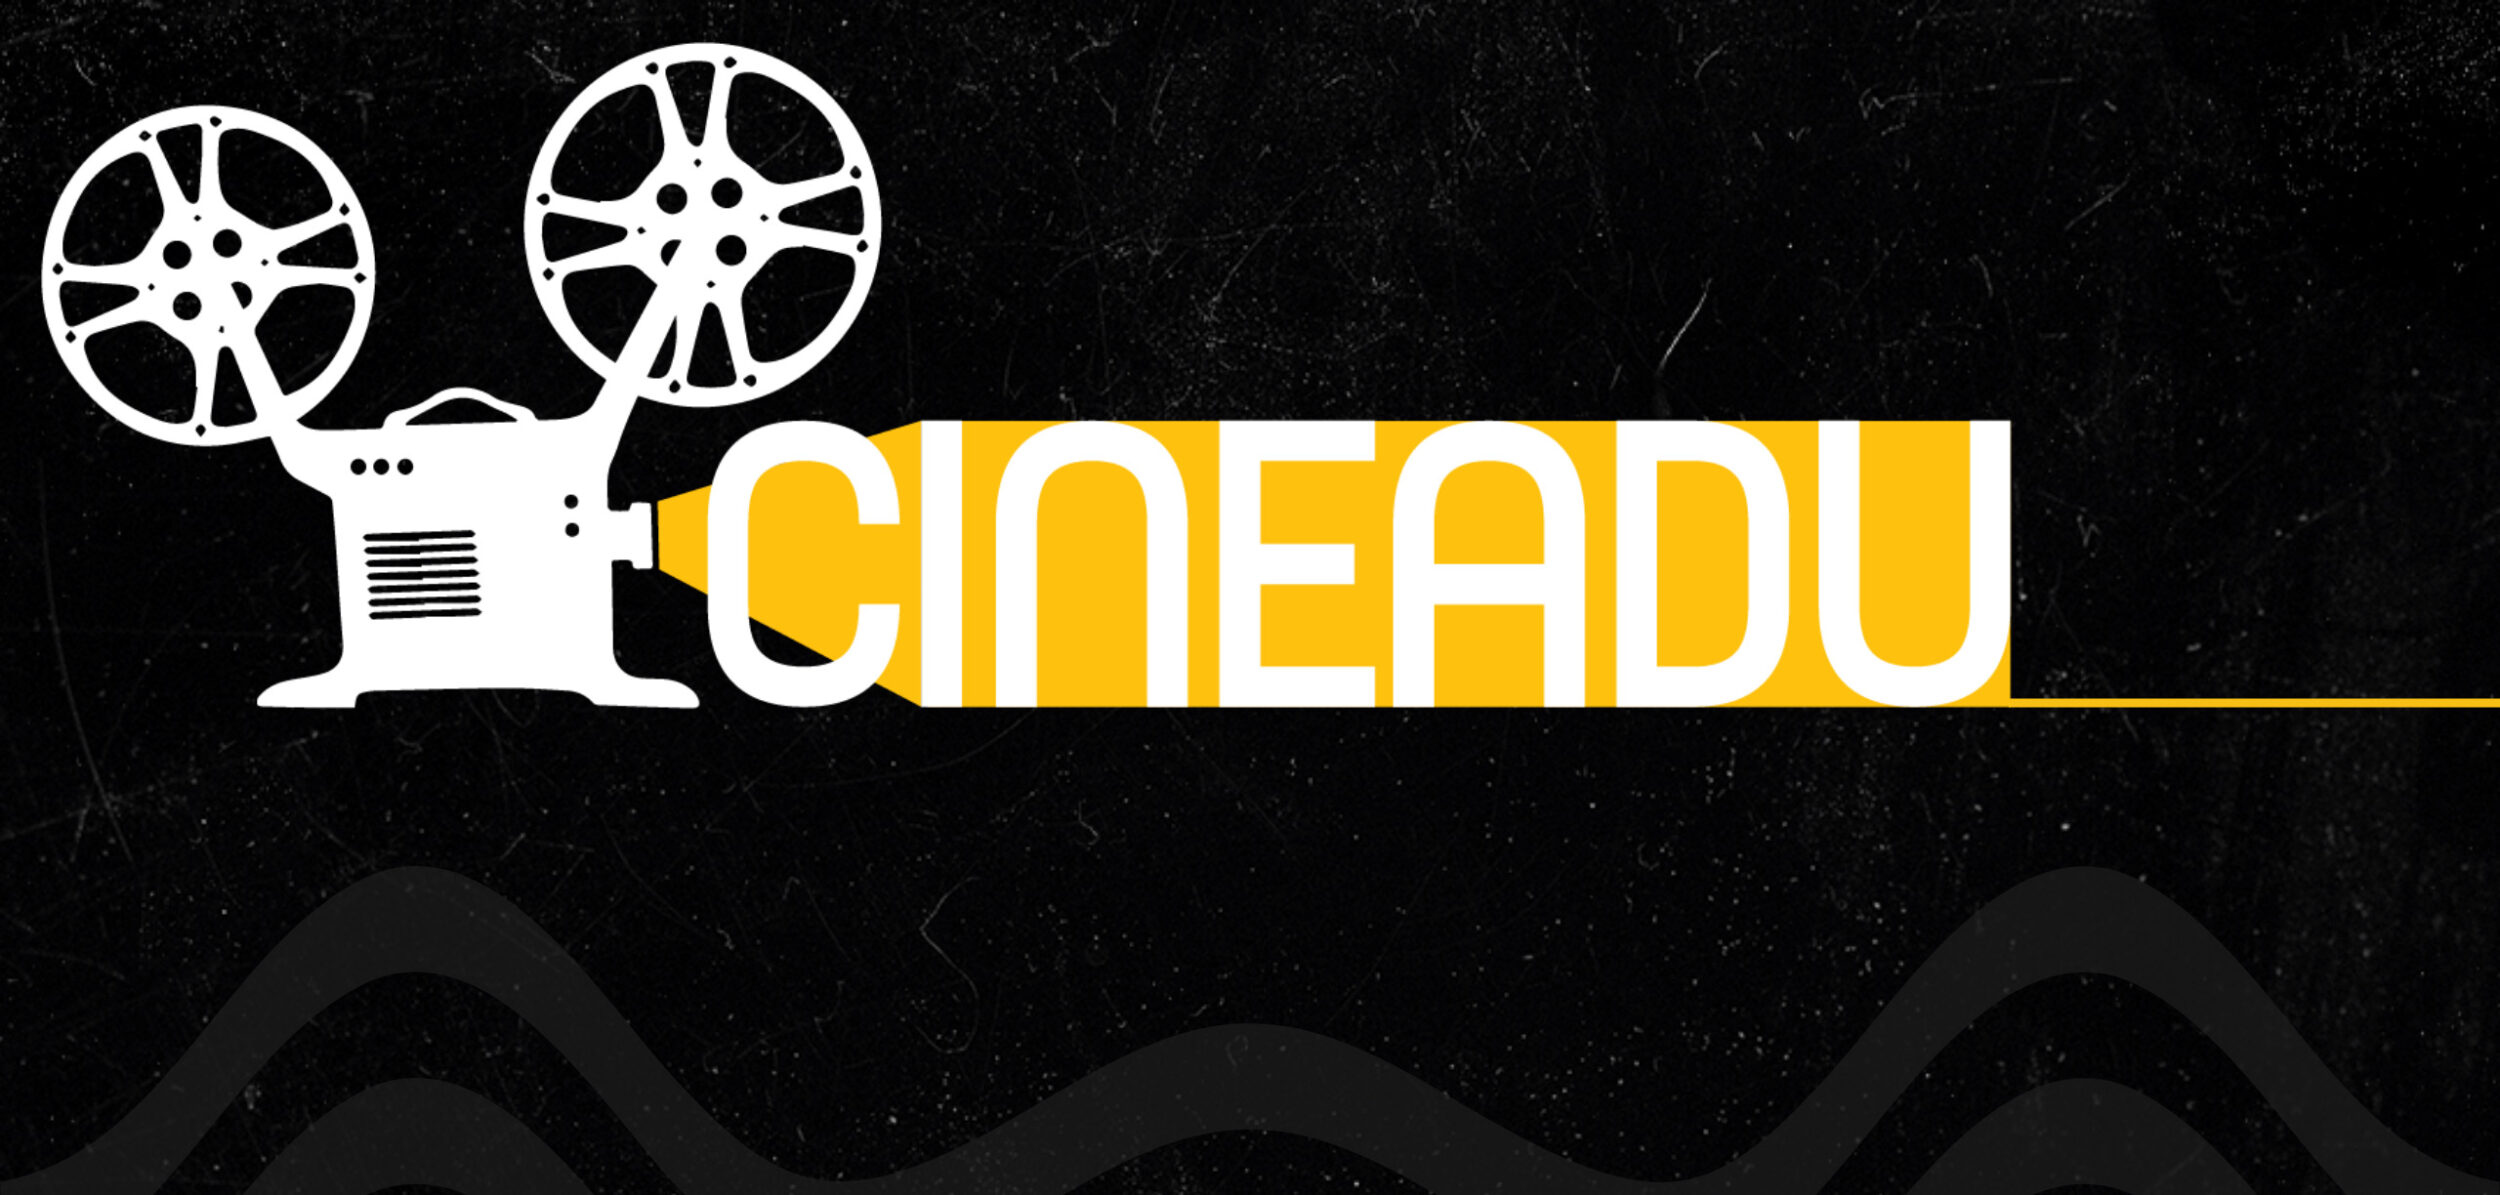 cineclube home 2022 — Atenção cinéfilos: o Cineclube da ADU está de volta! — ADunicamp